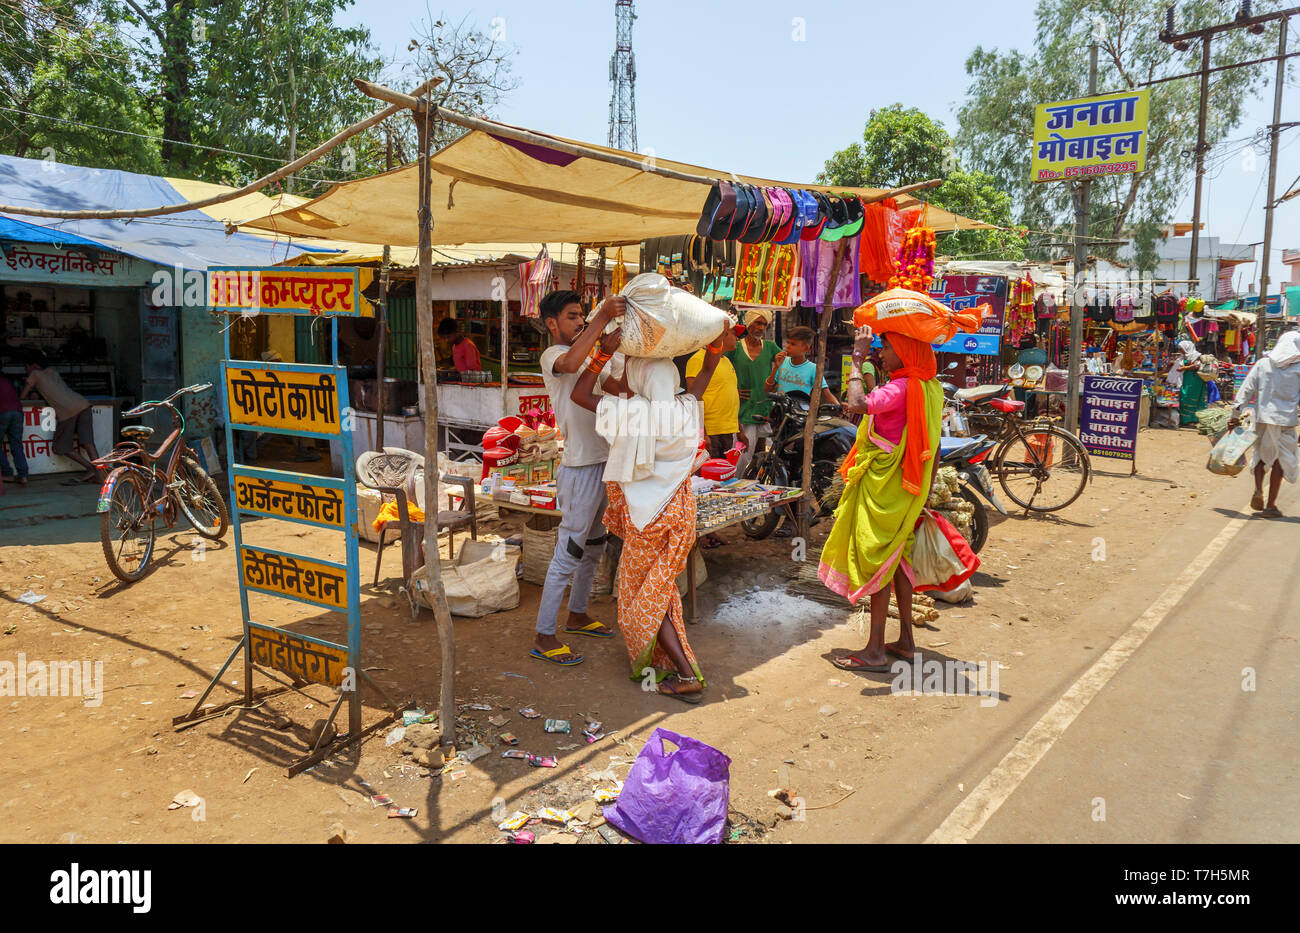 Scena di strada in Shahpura, un quartiere Dindori città nella zona centrale dello stato indiano del Madhya Pradesh, donne locali portare pacchetti sulle loro teste Foto Stock